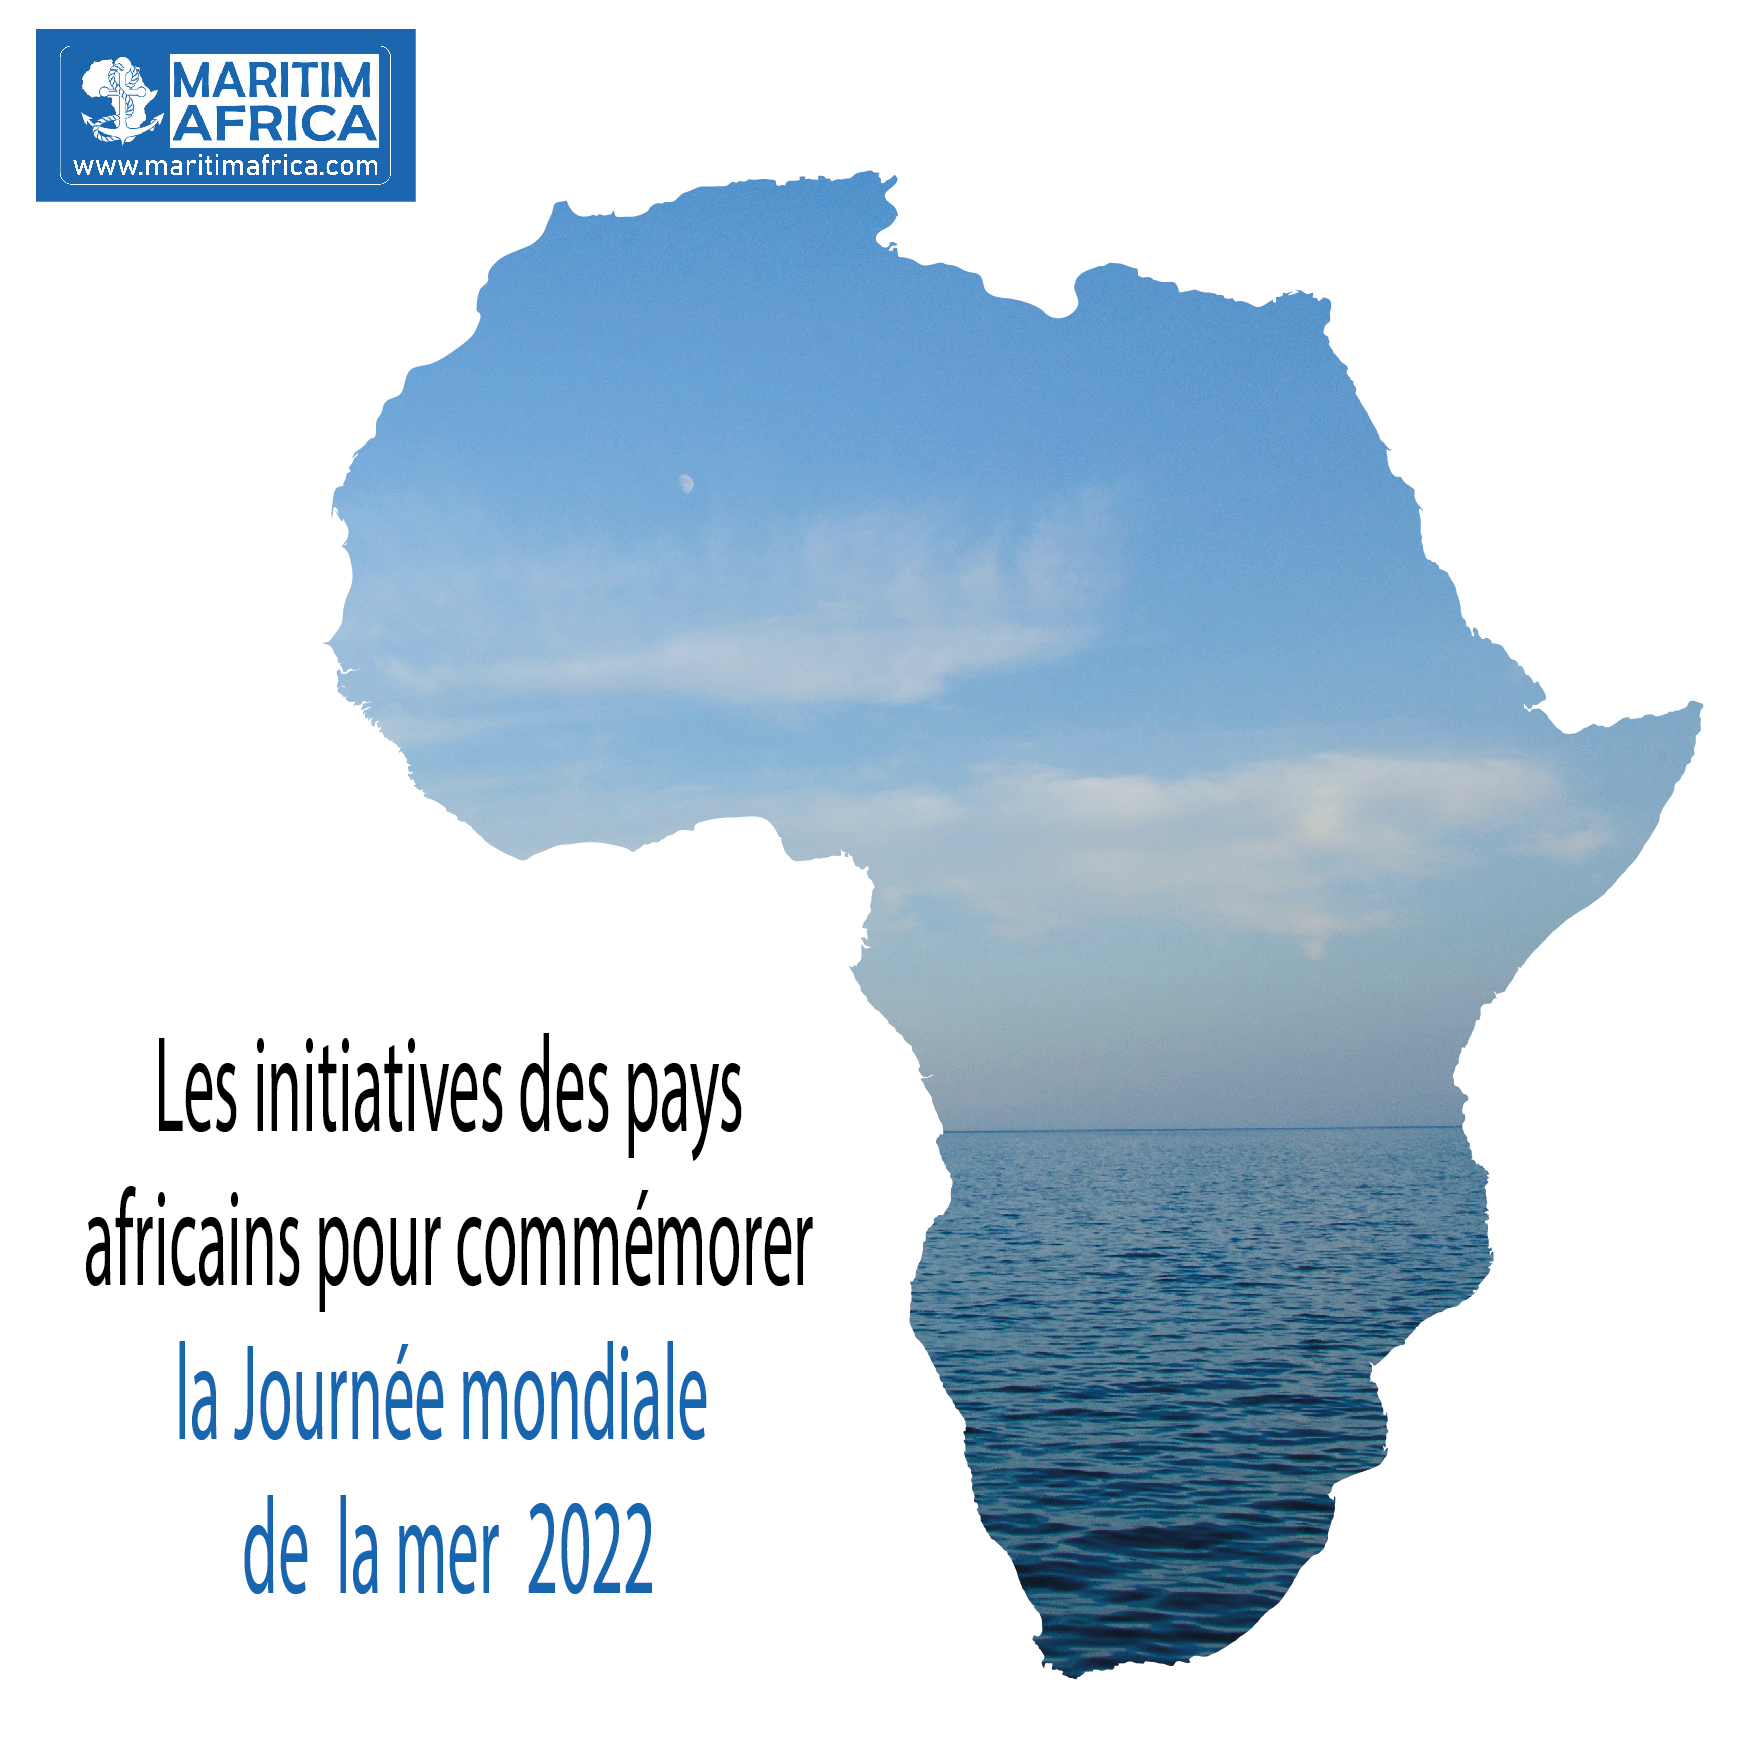 Les initiatives des pays africains pour commémorer la Journée mondiale de la mer de 2022